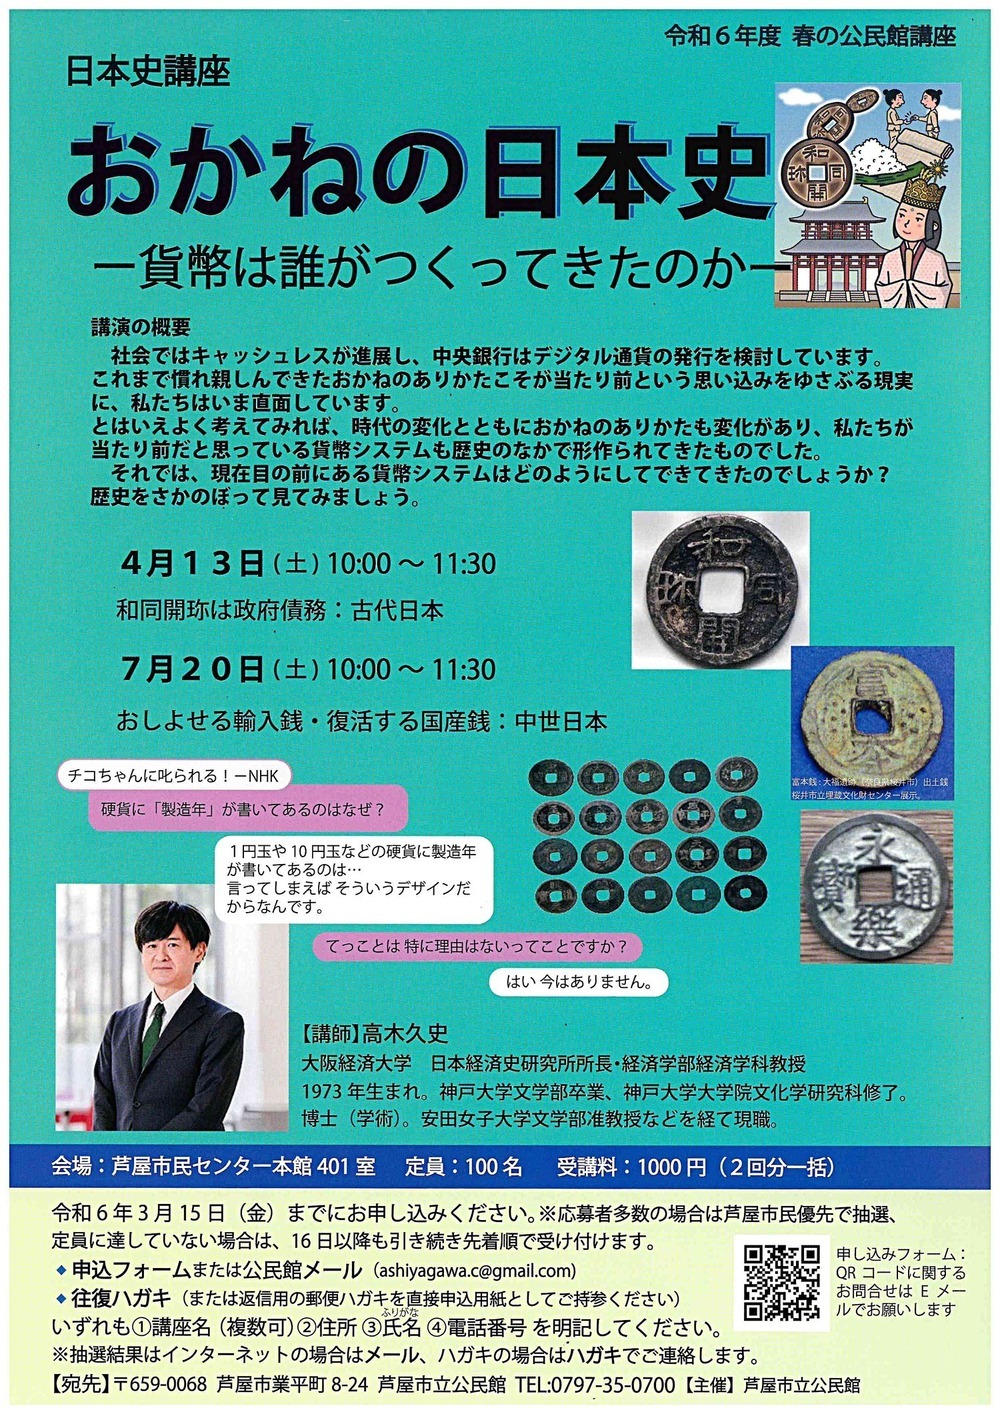 Curso de História Japonesa História Japonesa do Dinheiro